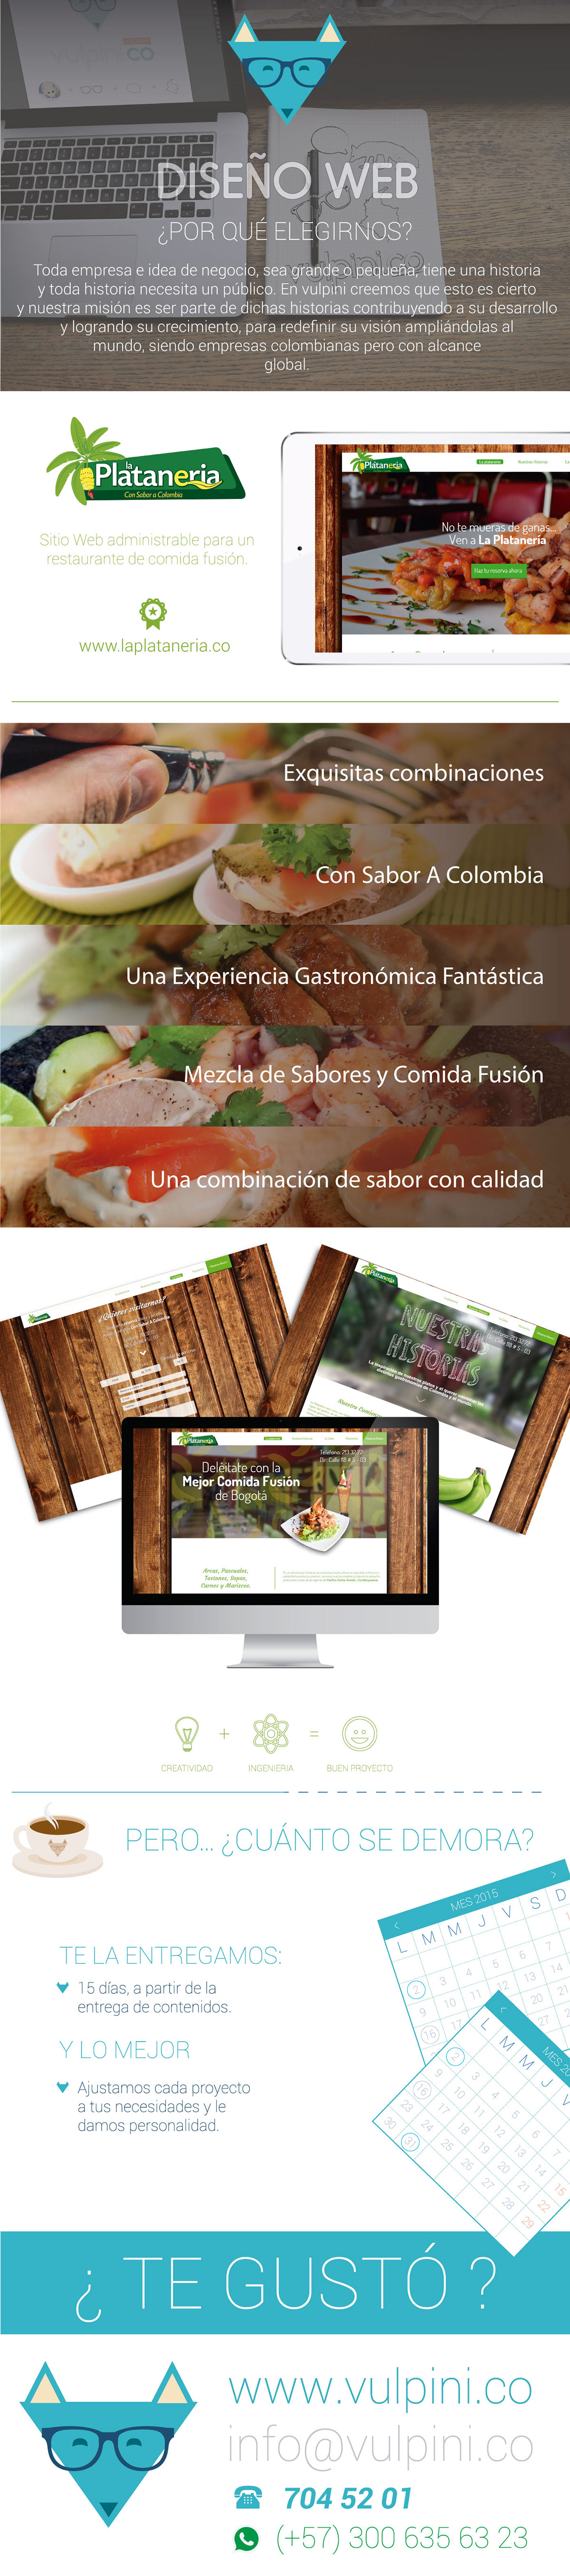 Diseño web restaurante desarrollo web